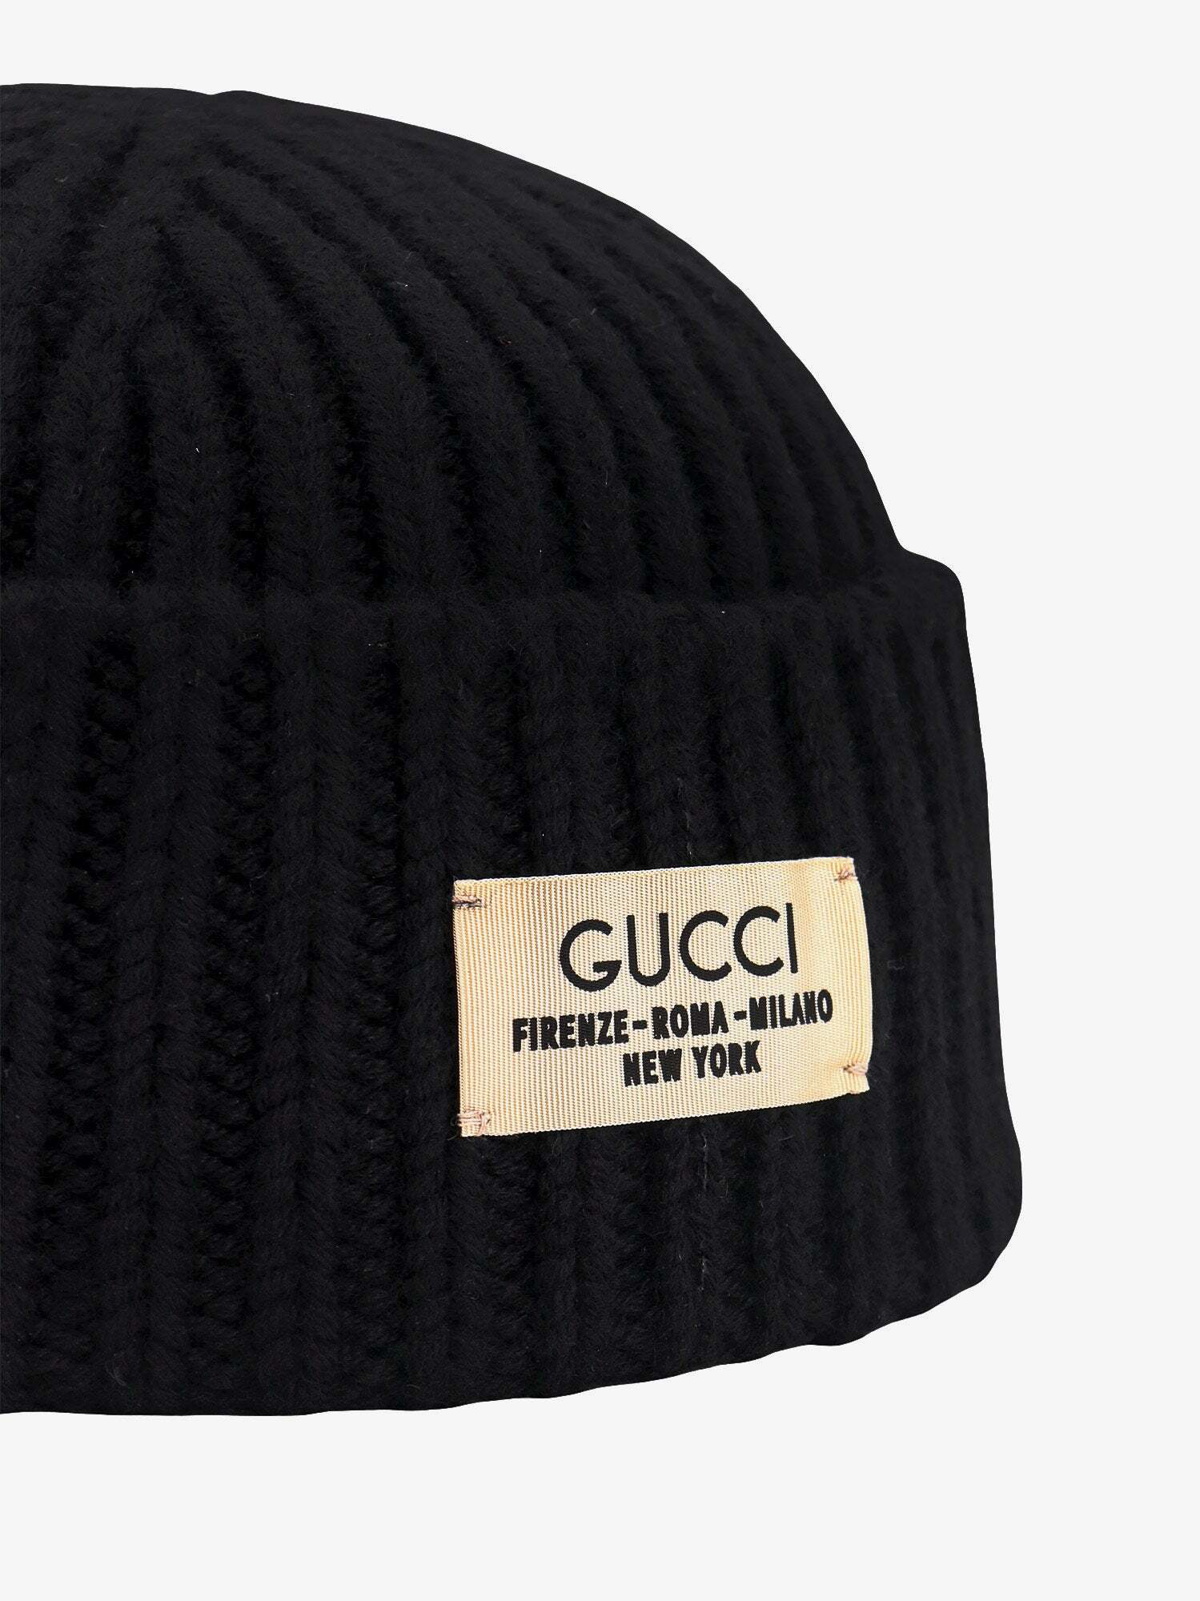 Gucci Hat Black Mens Gucci